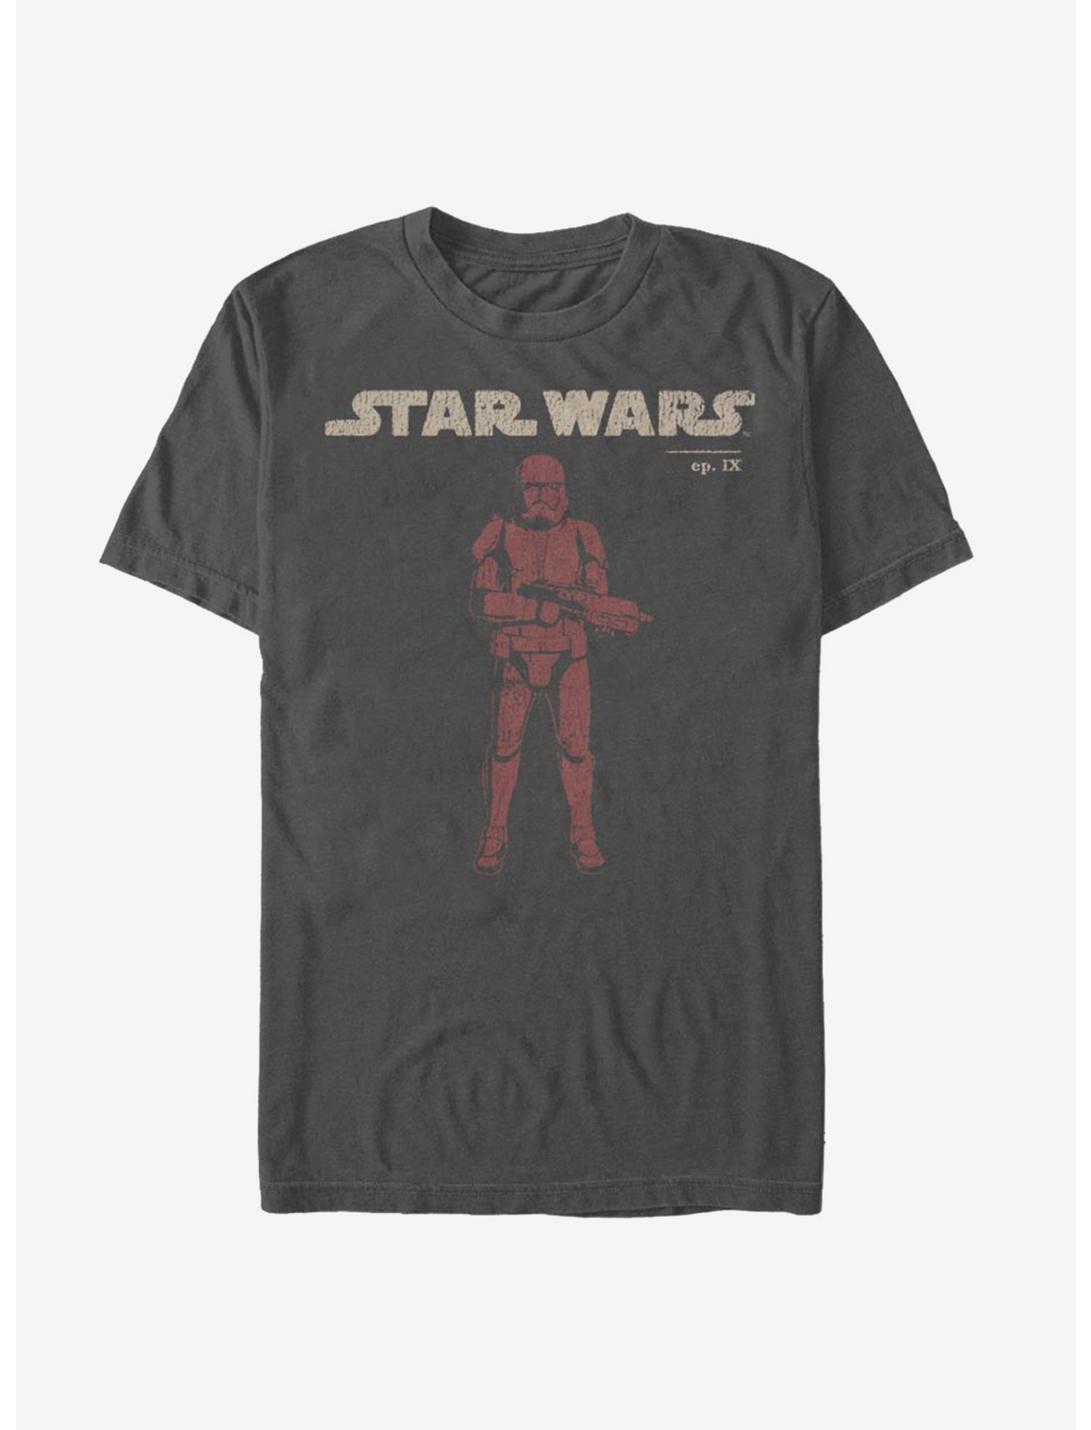 Star Wars Episode IX The Rise Of Skywalker Vigilant T-Shirt, CHARCOAL, hi-res